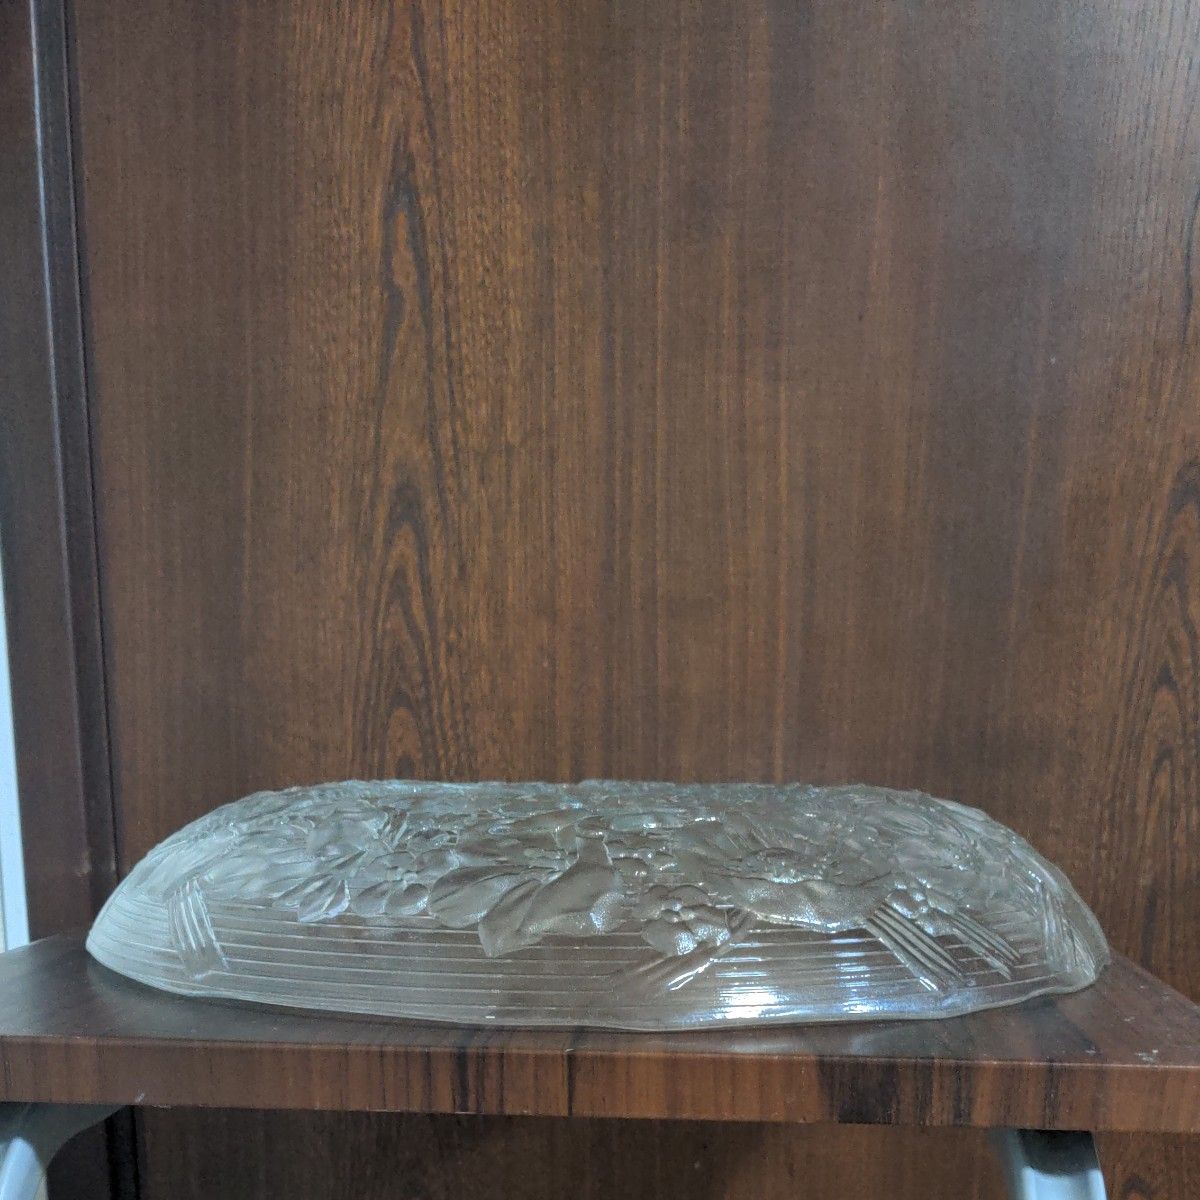 カメイガラス 株式会社のガラス 花柄プレート   盛皿 洋食器  スイカ皿  皿幅は32C   高さは4.5C  未使用品  